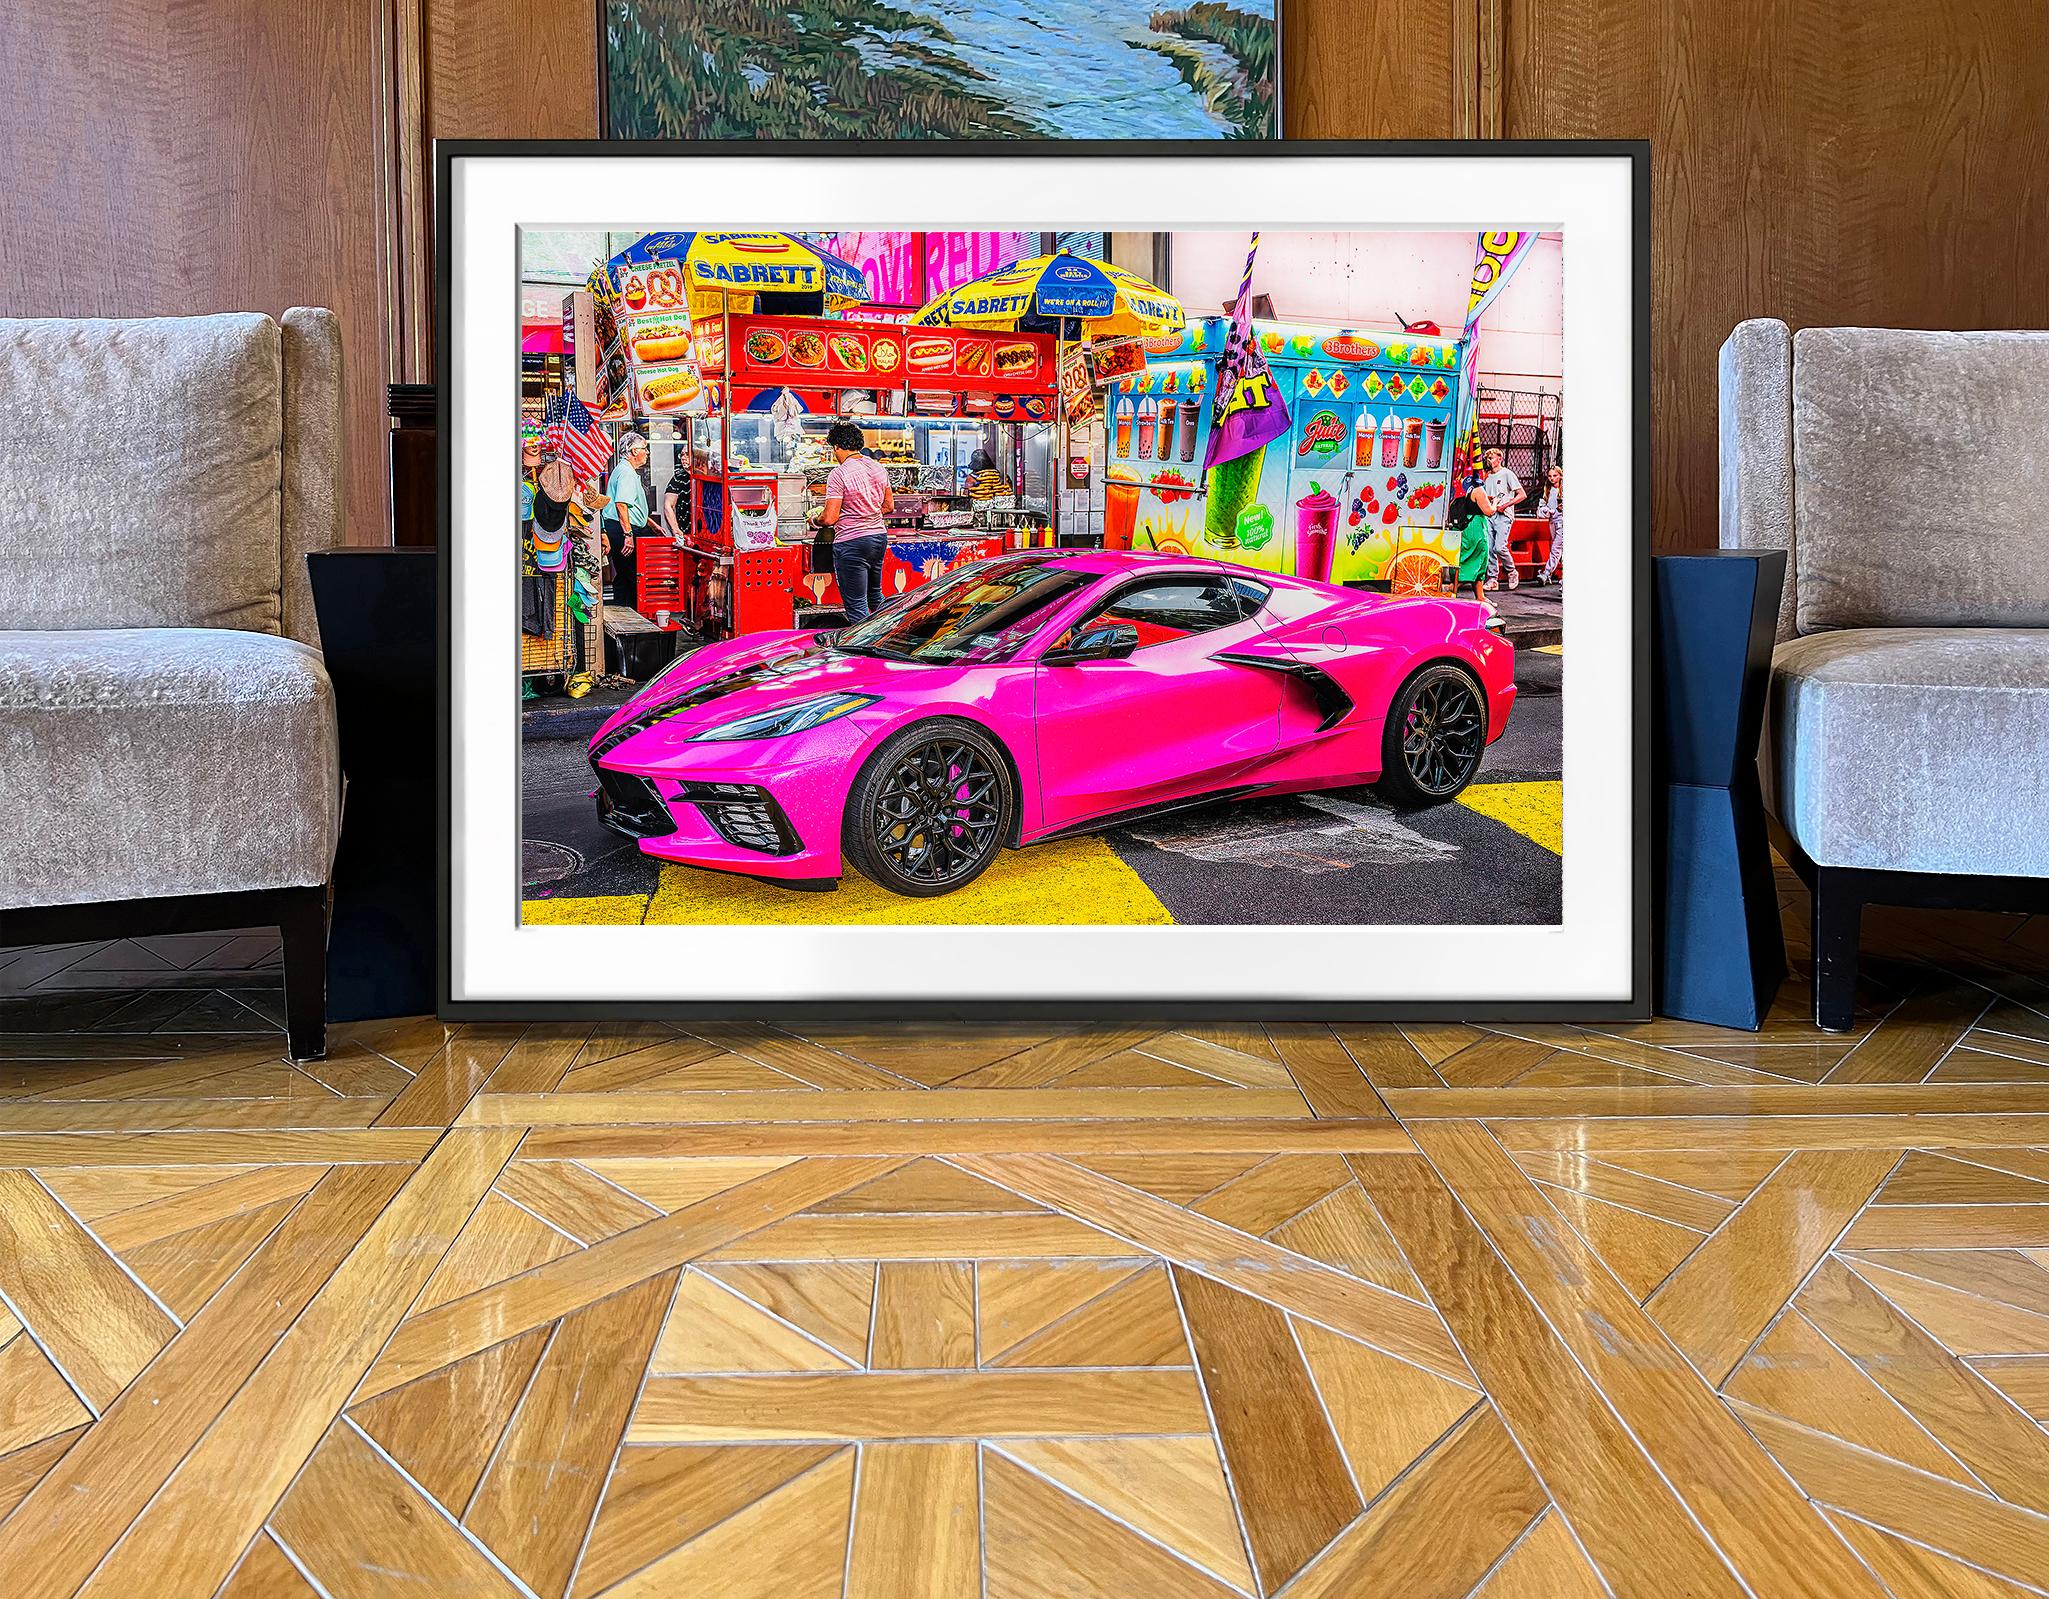 Im visuellen Wahnsinn des Times Square,  ein Leuchtfeuer aus futuristischem Design und Farbe in Form einer pinkfarbenen Corvette hält vor einer Ampel.  Das unheimliche Bild wurde von dem erfahrenen Straßenfotografen Mitchell Funk aufgenommen, der